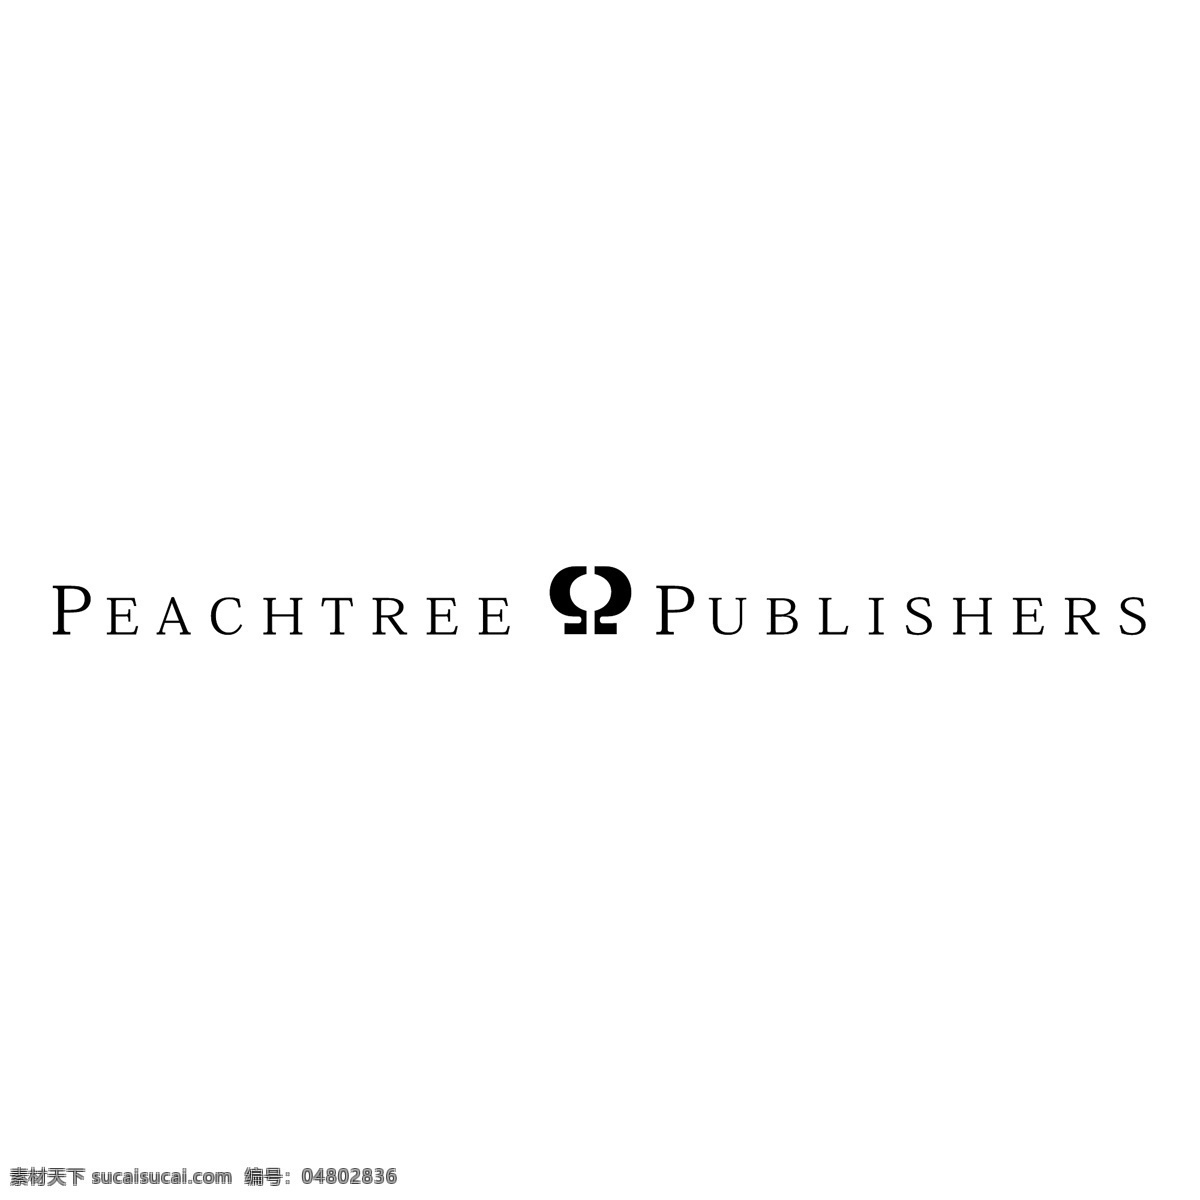 桃树出版社 矢量标志下载 免费矢量标识 商标 品牌标识 标识 矢量 免费 品牌 公司 白色